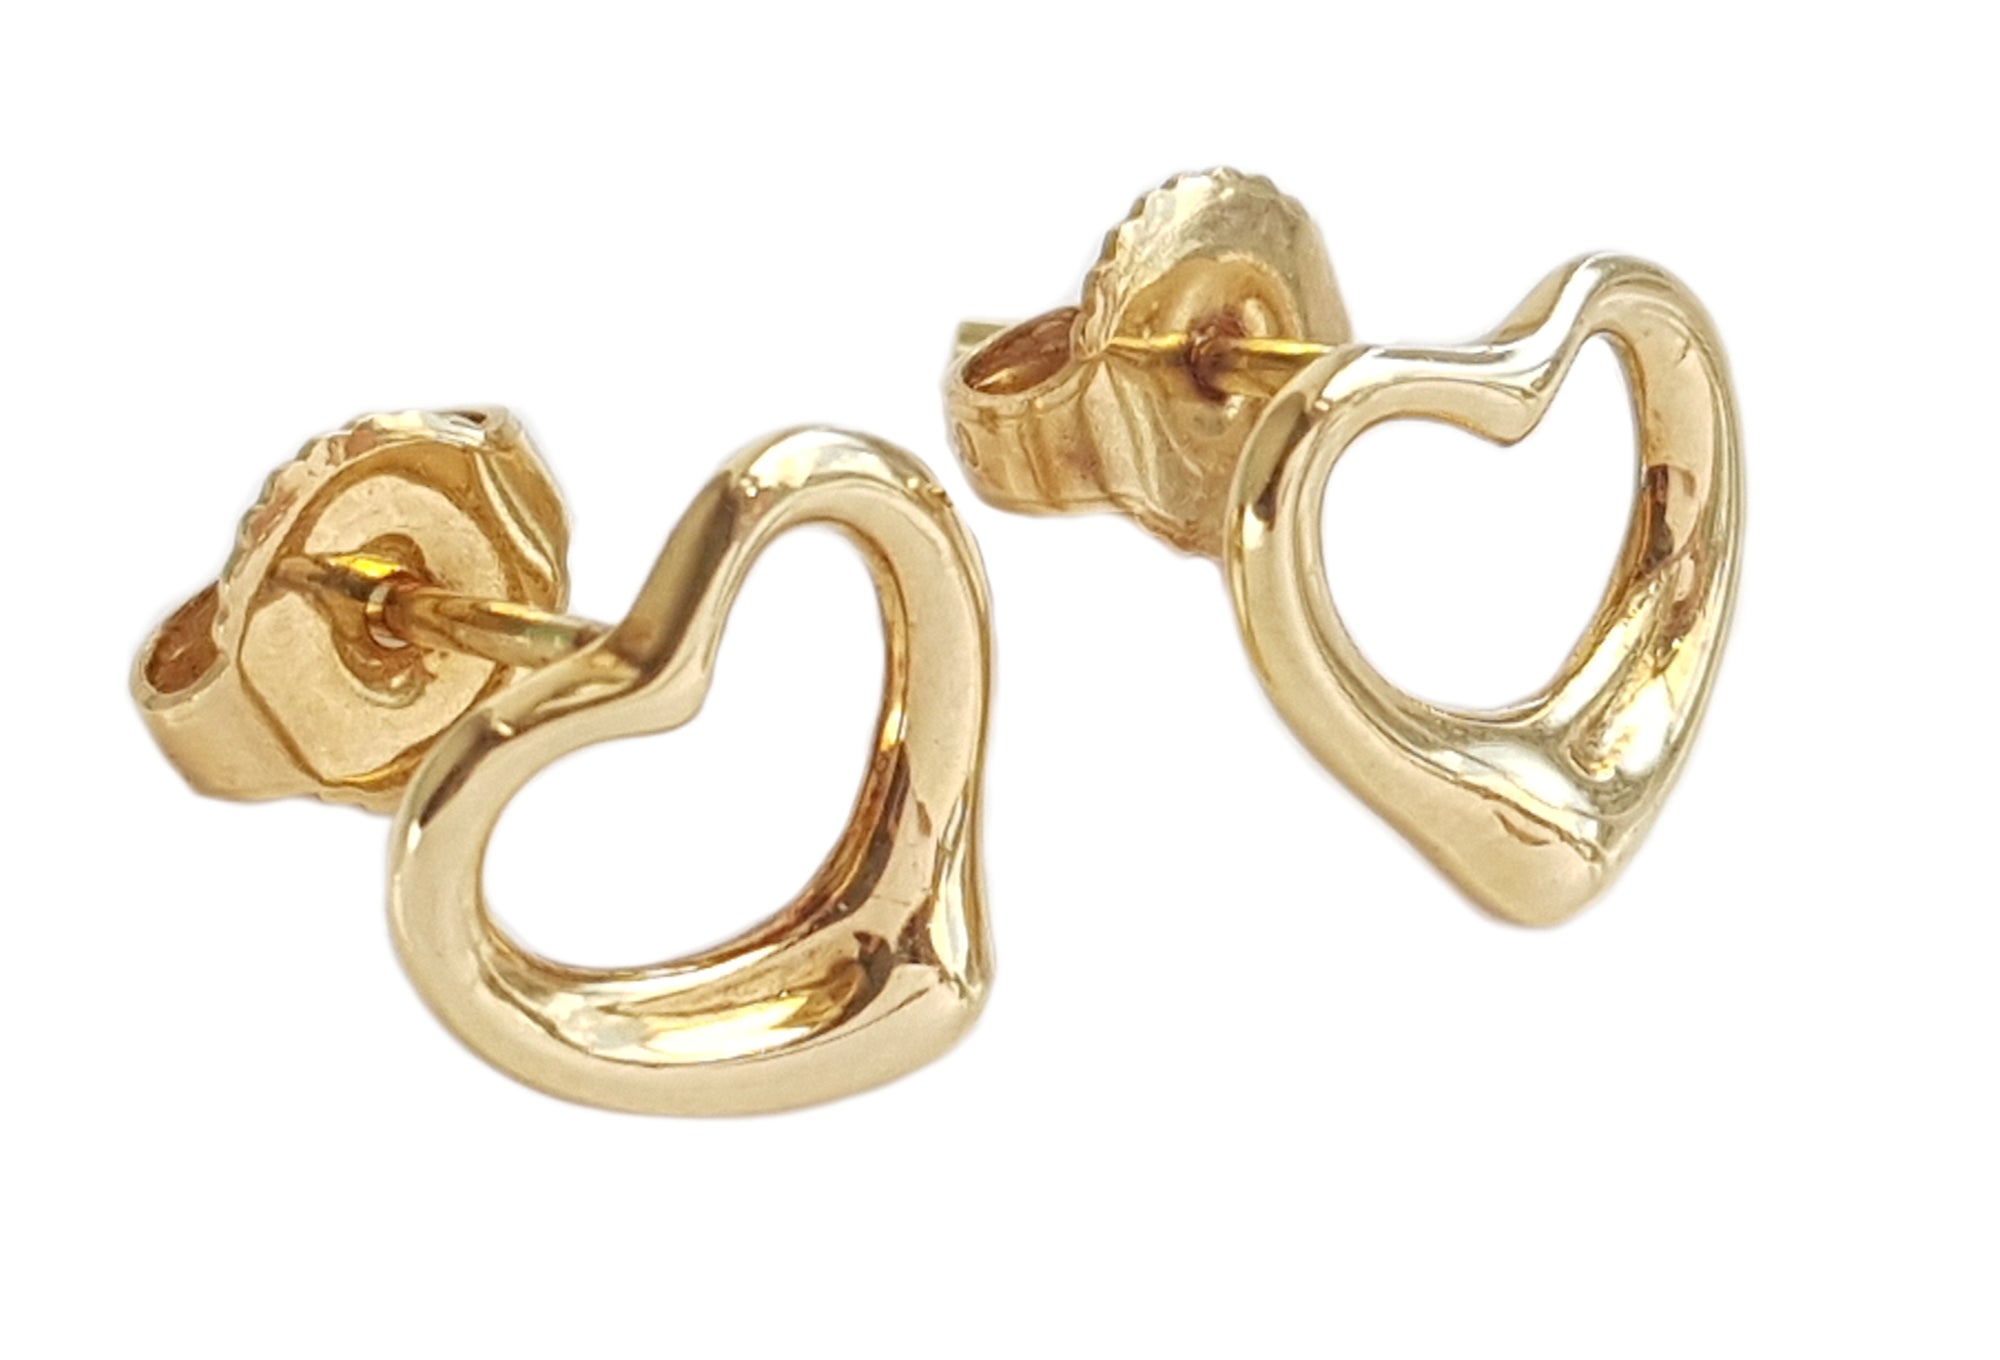 Tiffany & Co 750 (Gold) Elsa Peretti Open Heart Earrings 9mm